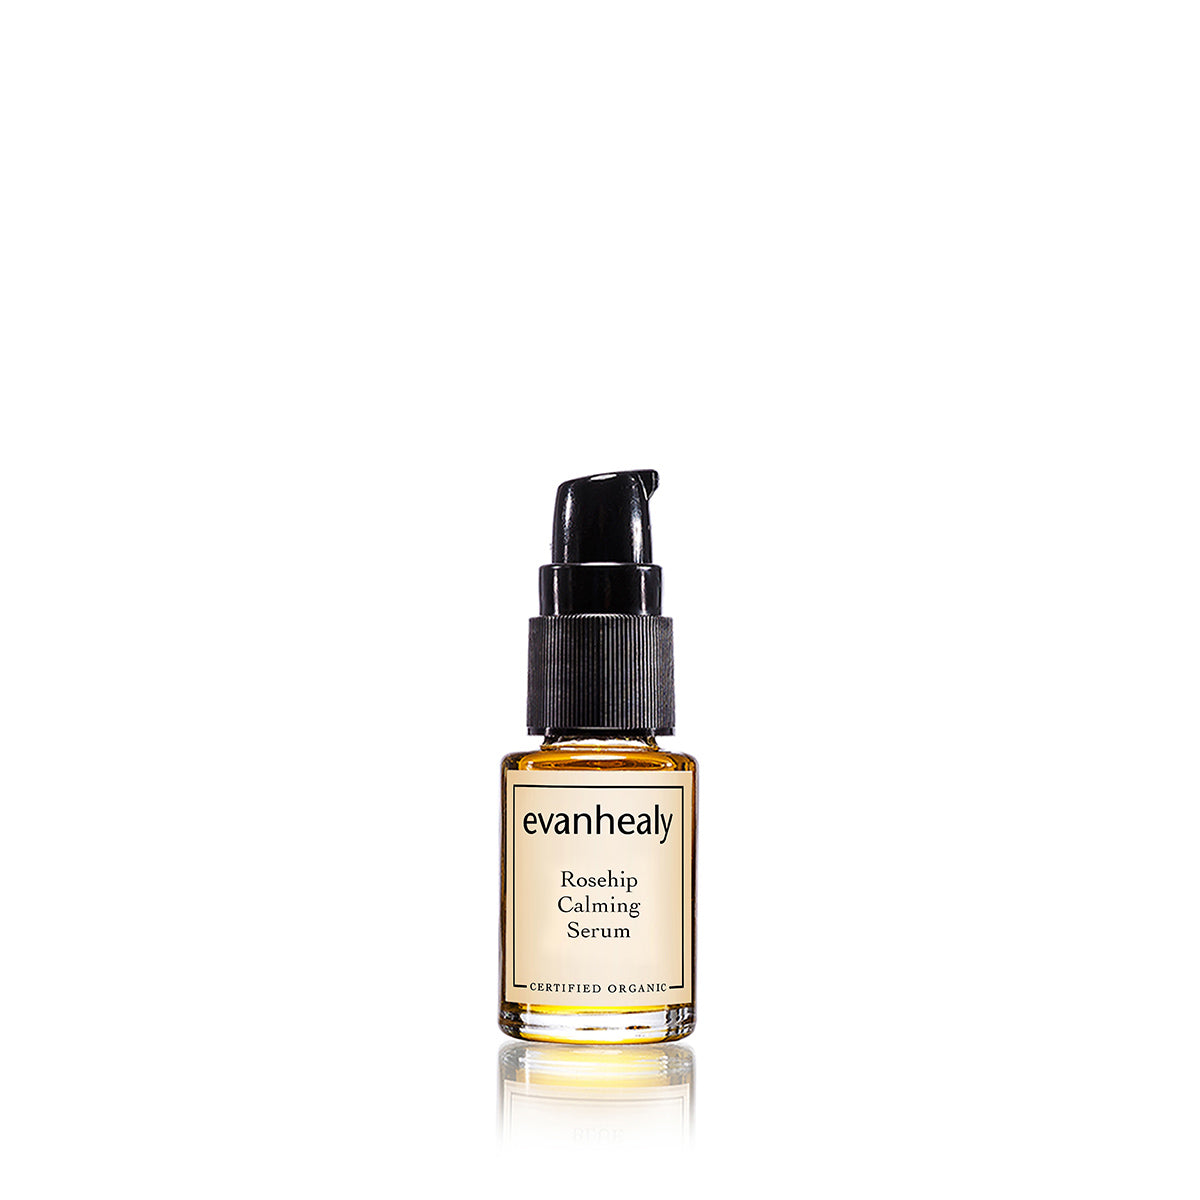 evanhealy rosehip calming facial oil serum for skin care